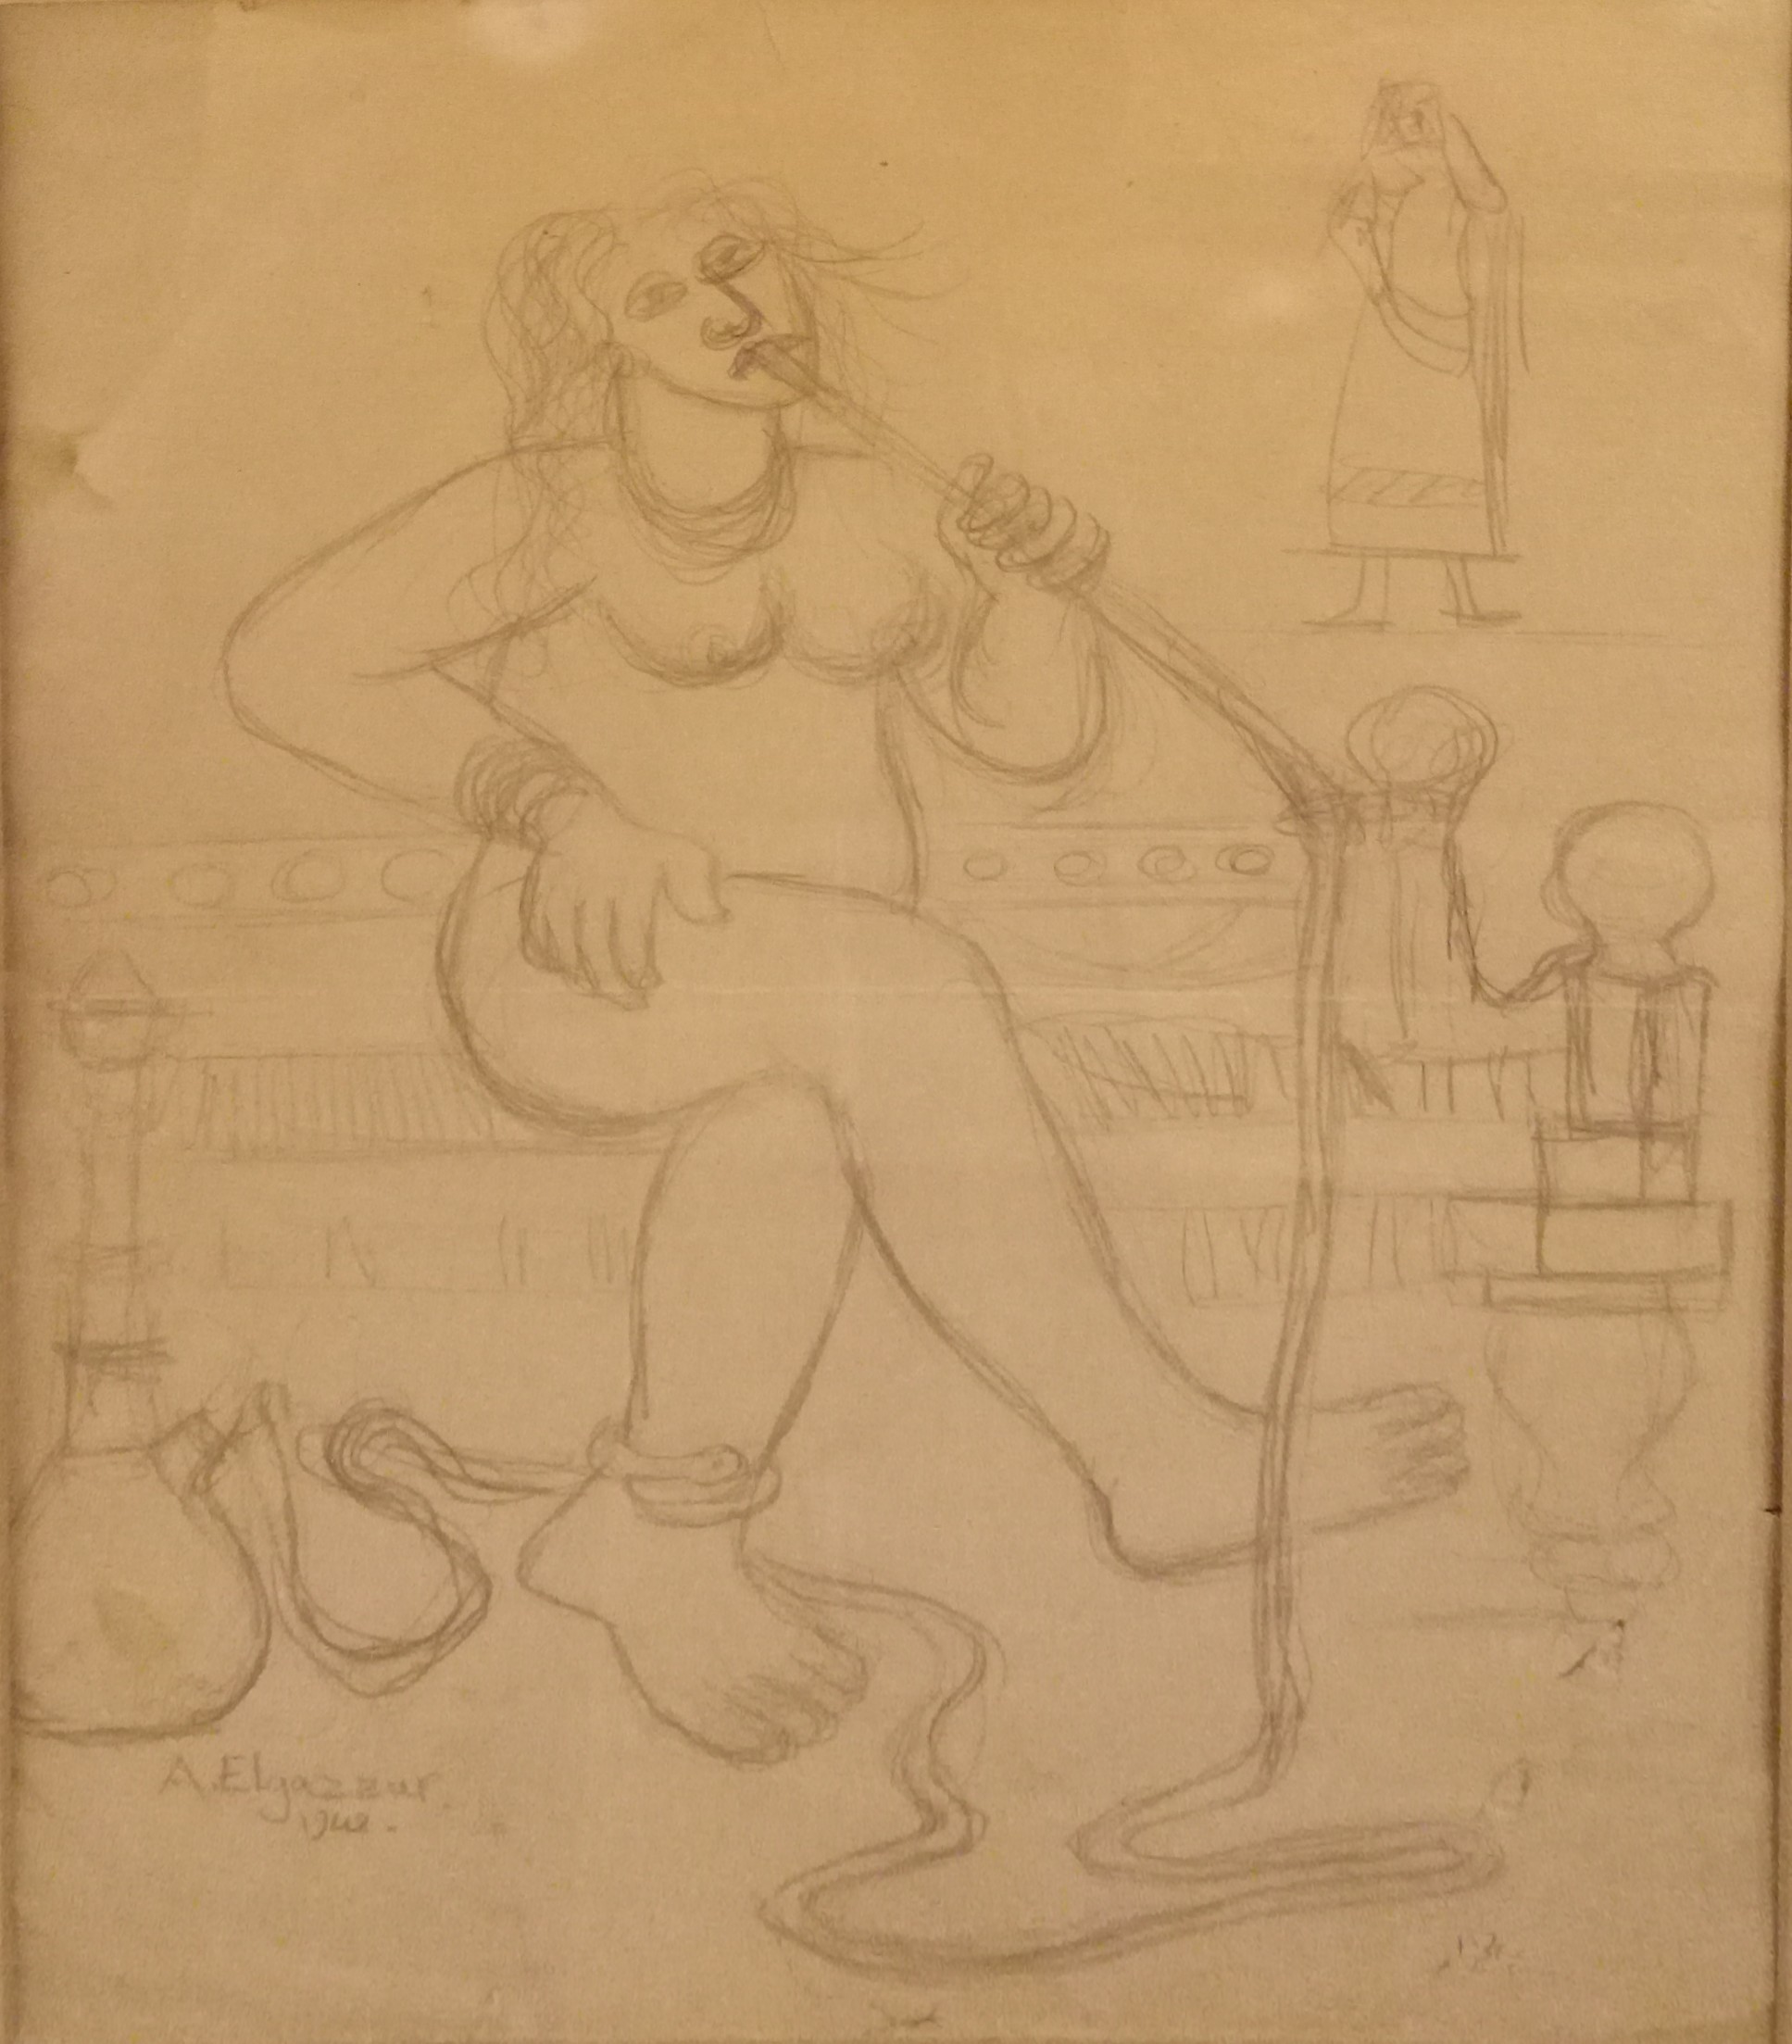 Abdel Hadi al-Gazzar, Femme à la Chicha, 1948. Pencil on paper, 35x28cm, signed and dated.